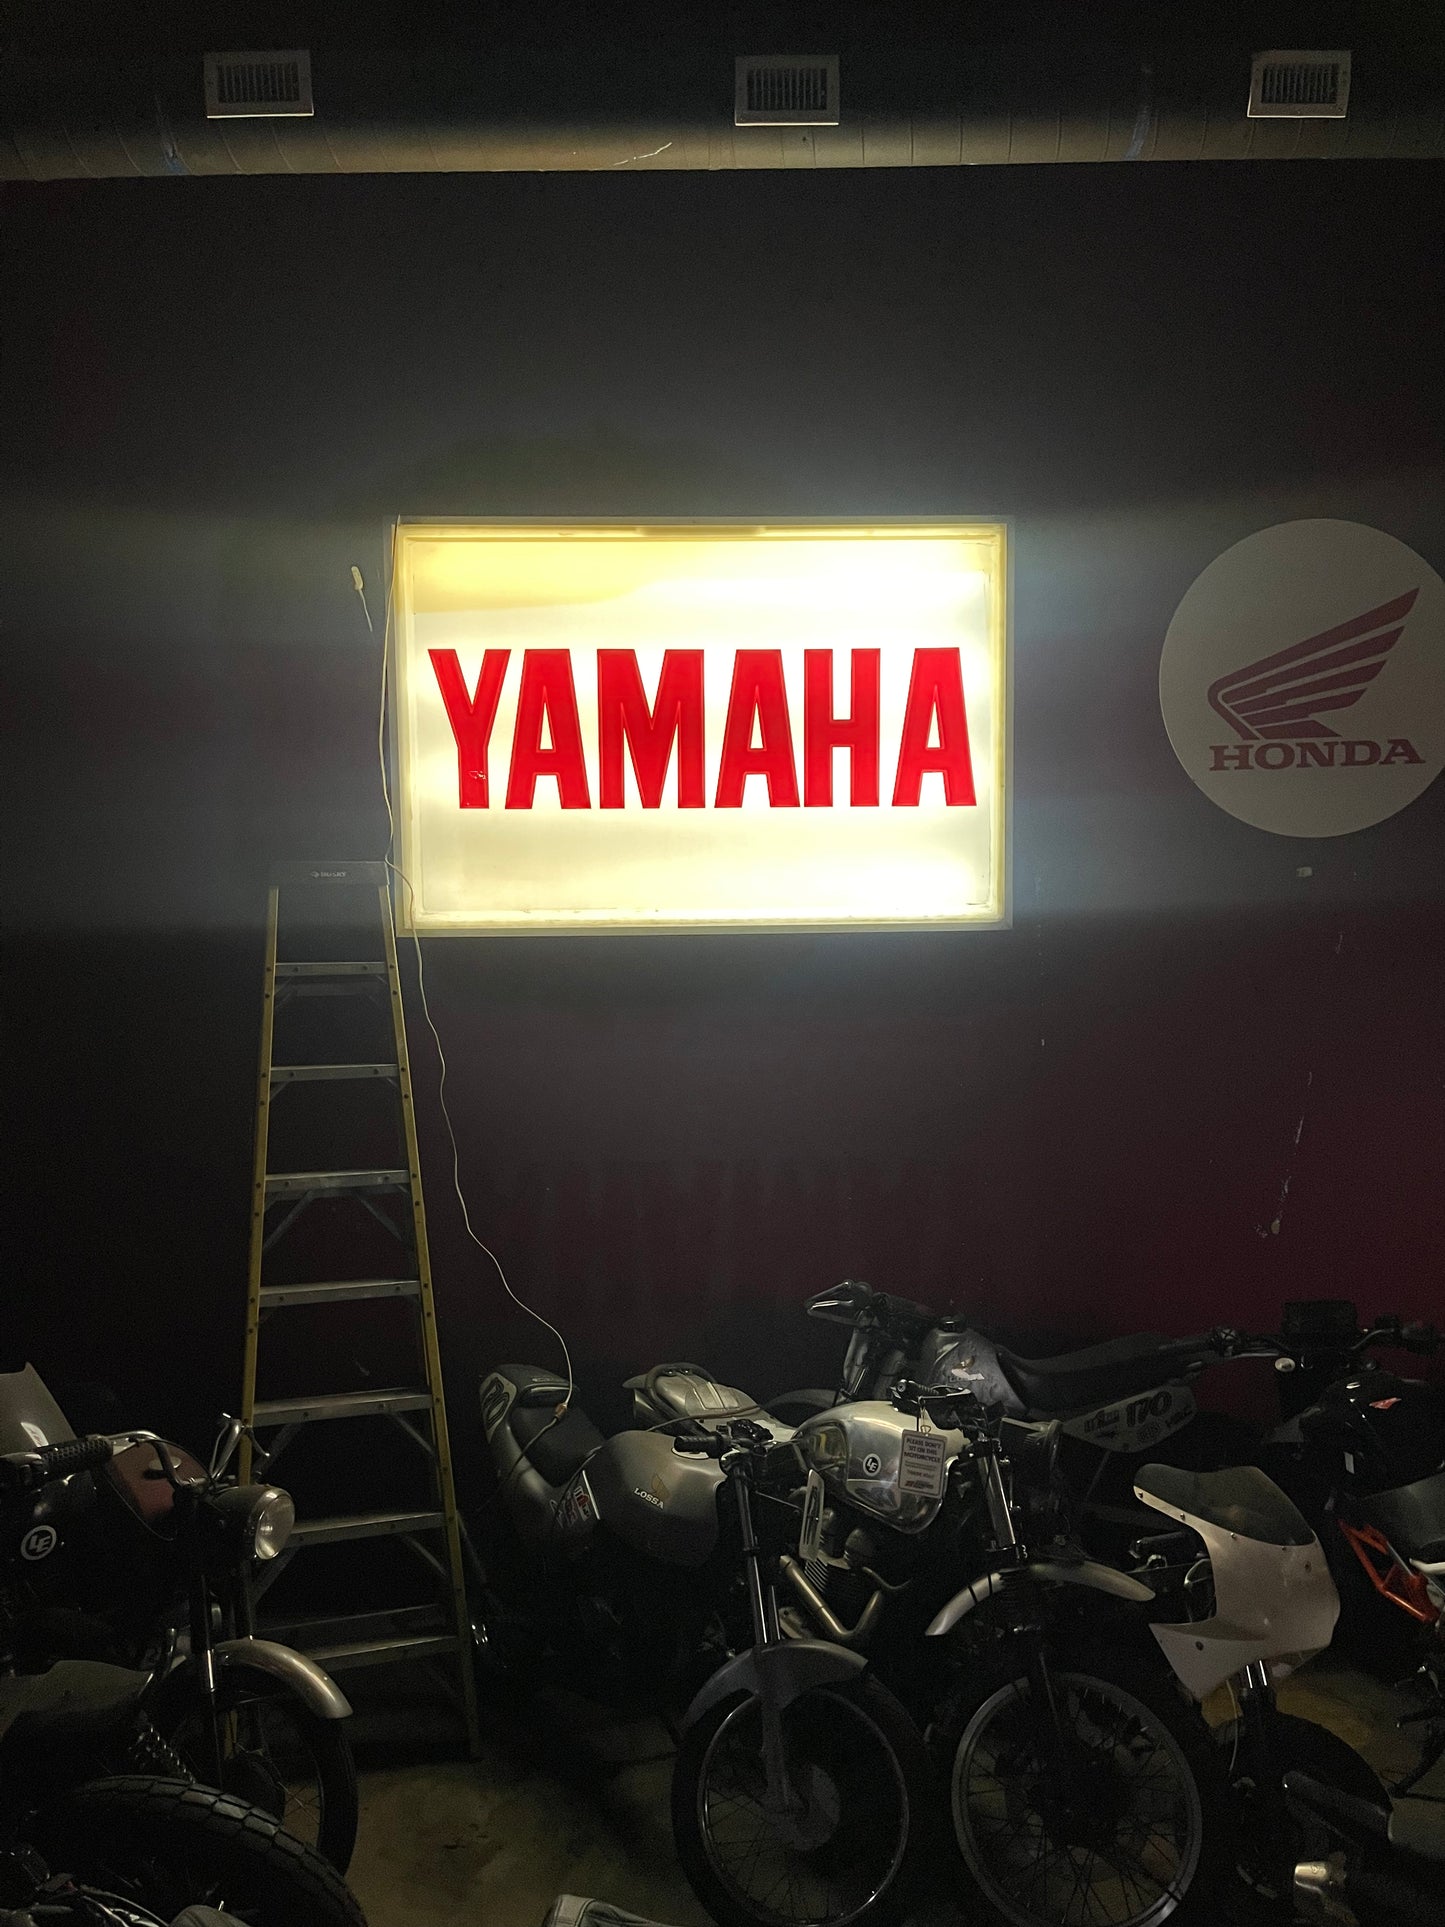 Vintage Yamaha dealership sign